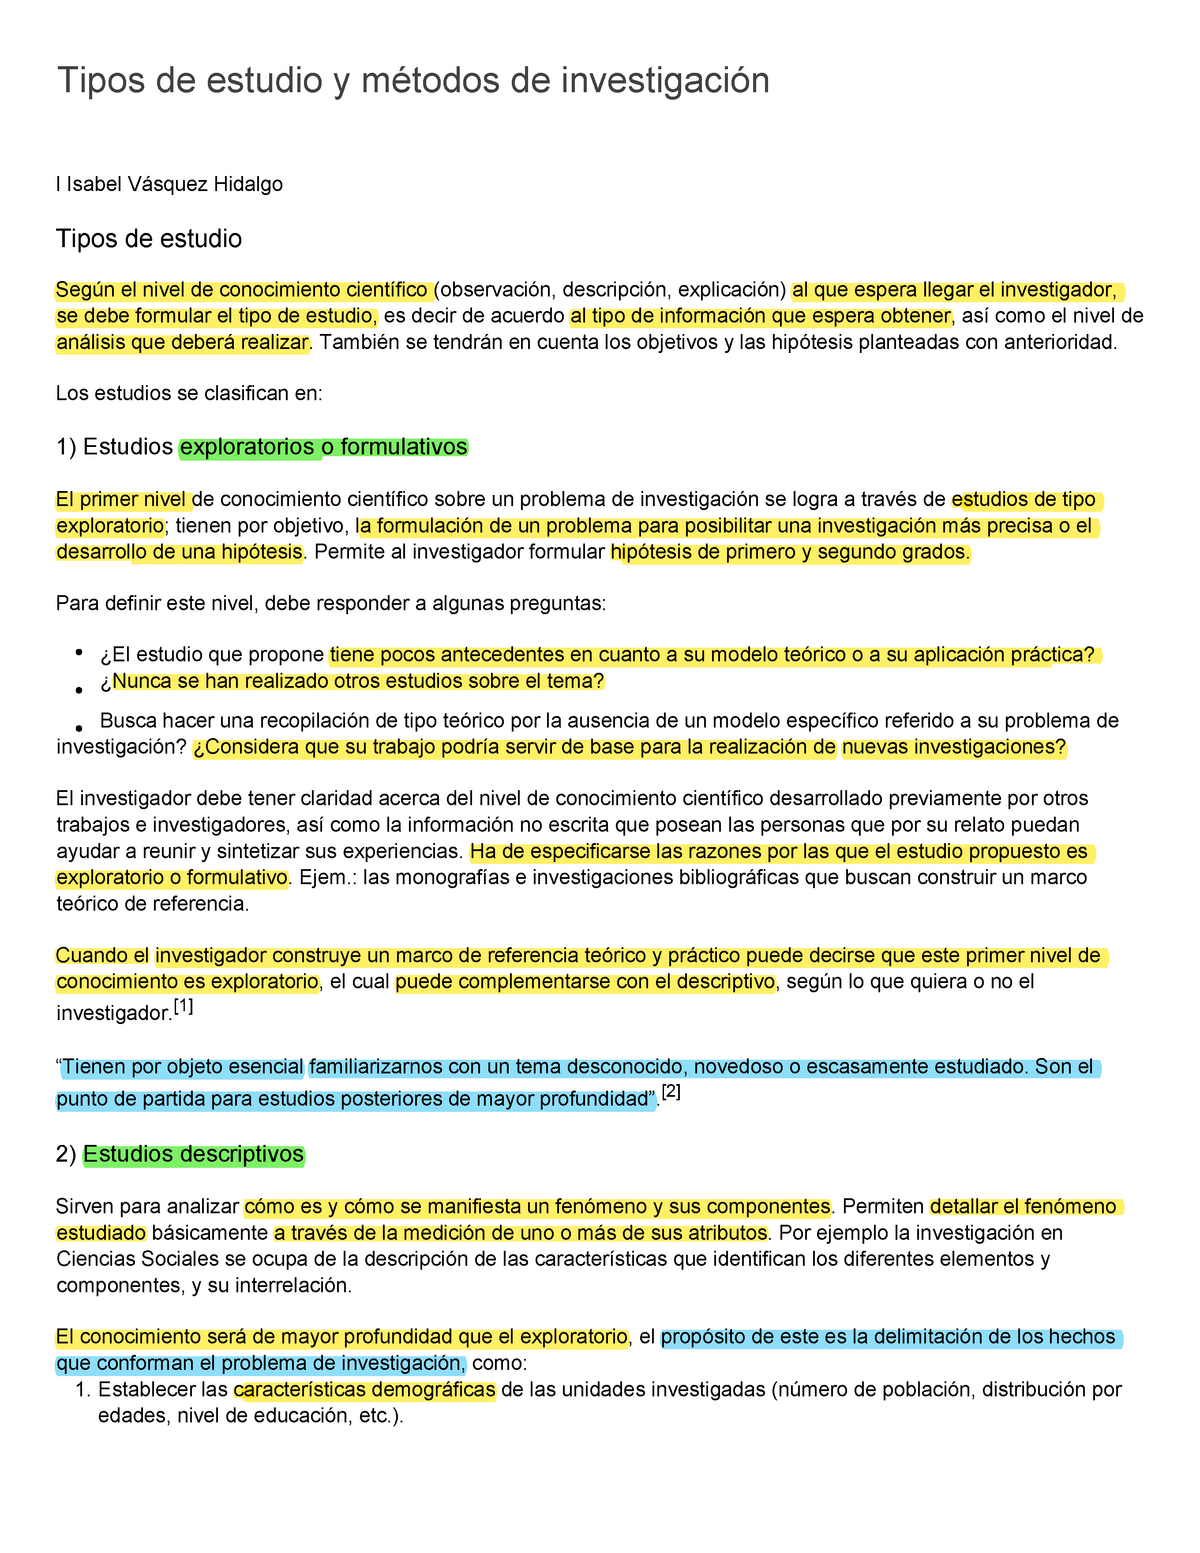 Texto 1. Métodos y tipos de investigación - Tipos de estudio y métodos de  investigación I Isabel - Studocu